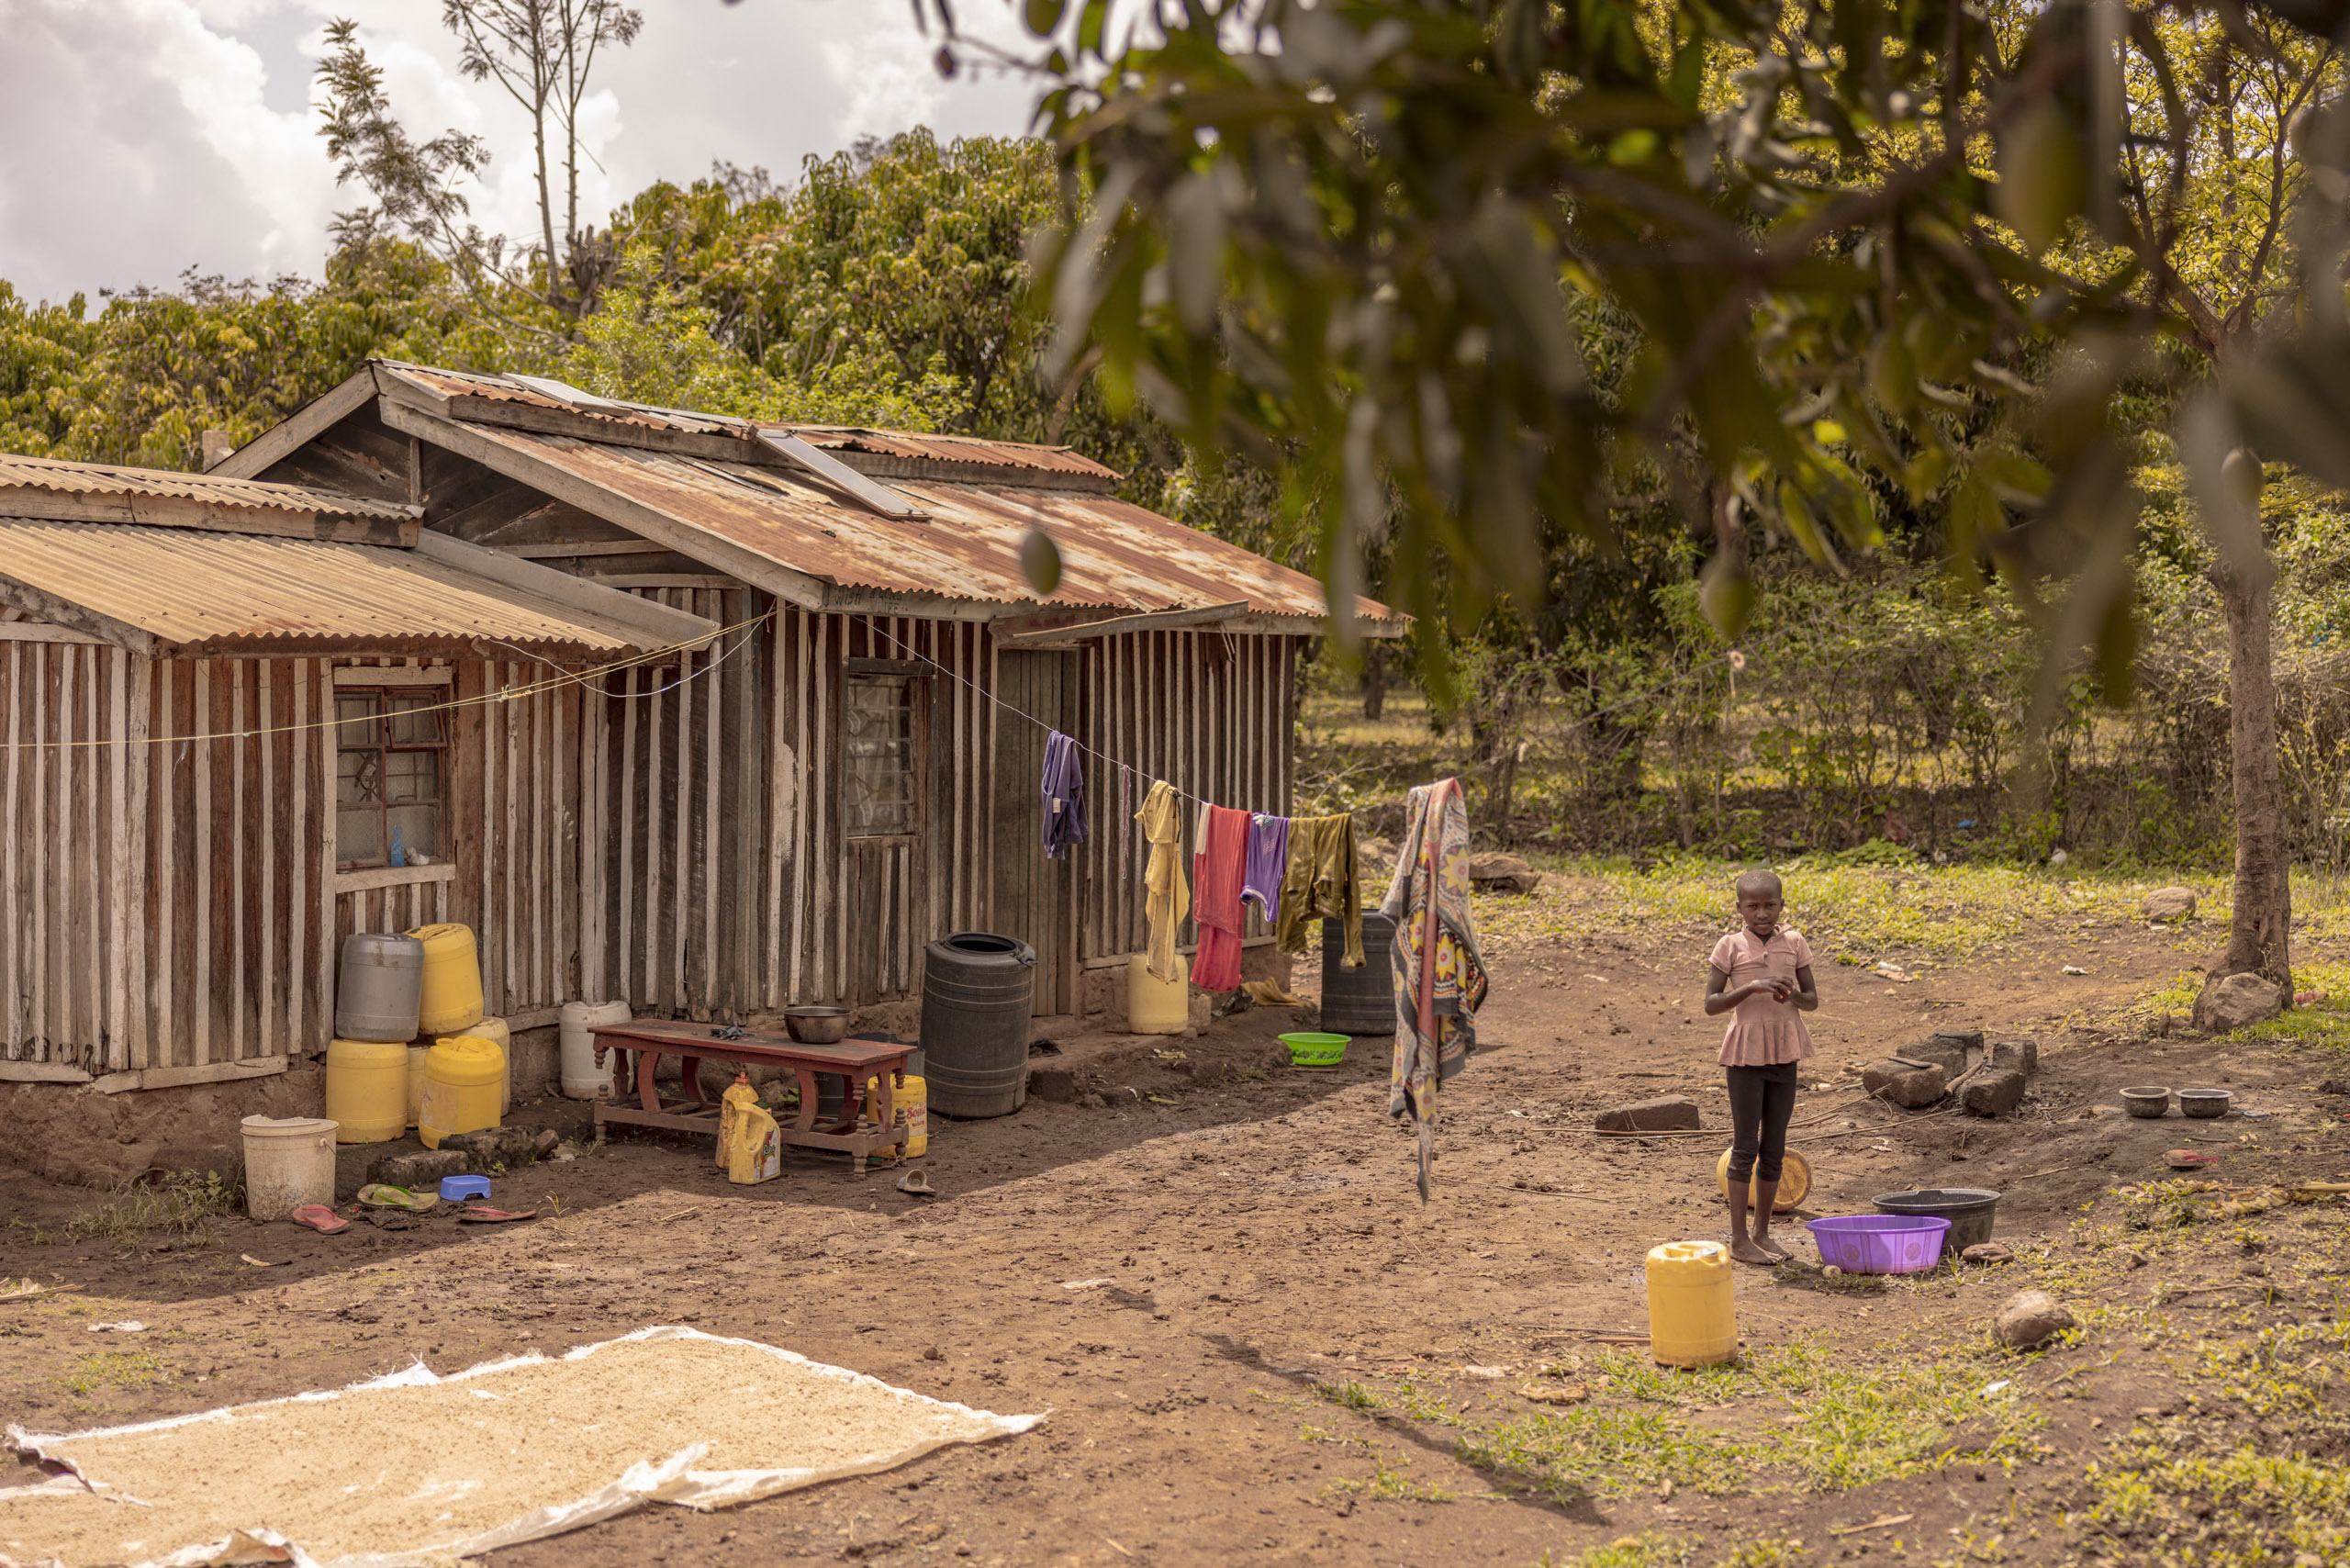 Ein Kind steht vor einem rustikalen Haus mit Wellblechwänden und Blechdach, umgeben von trocknendem Getreide, hängender Wäsche und verschiedenen Haushaltsgegenständen in einer ländlichen Landschaft. © Fotografie Tomas Rodriguez